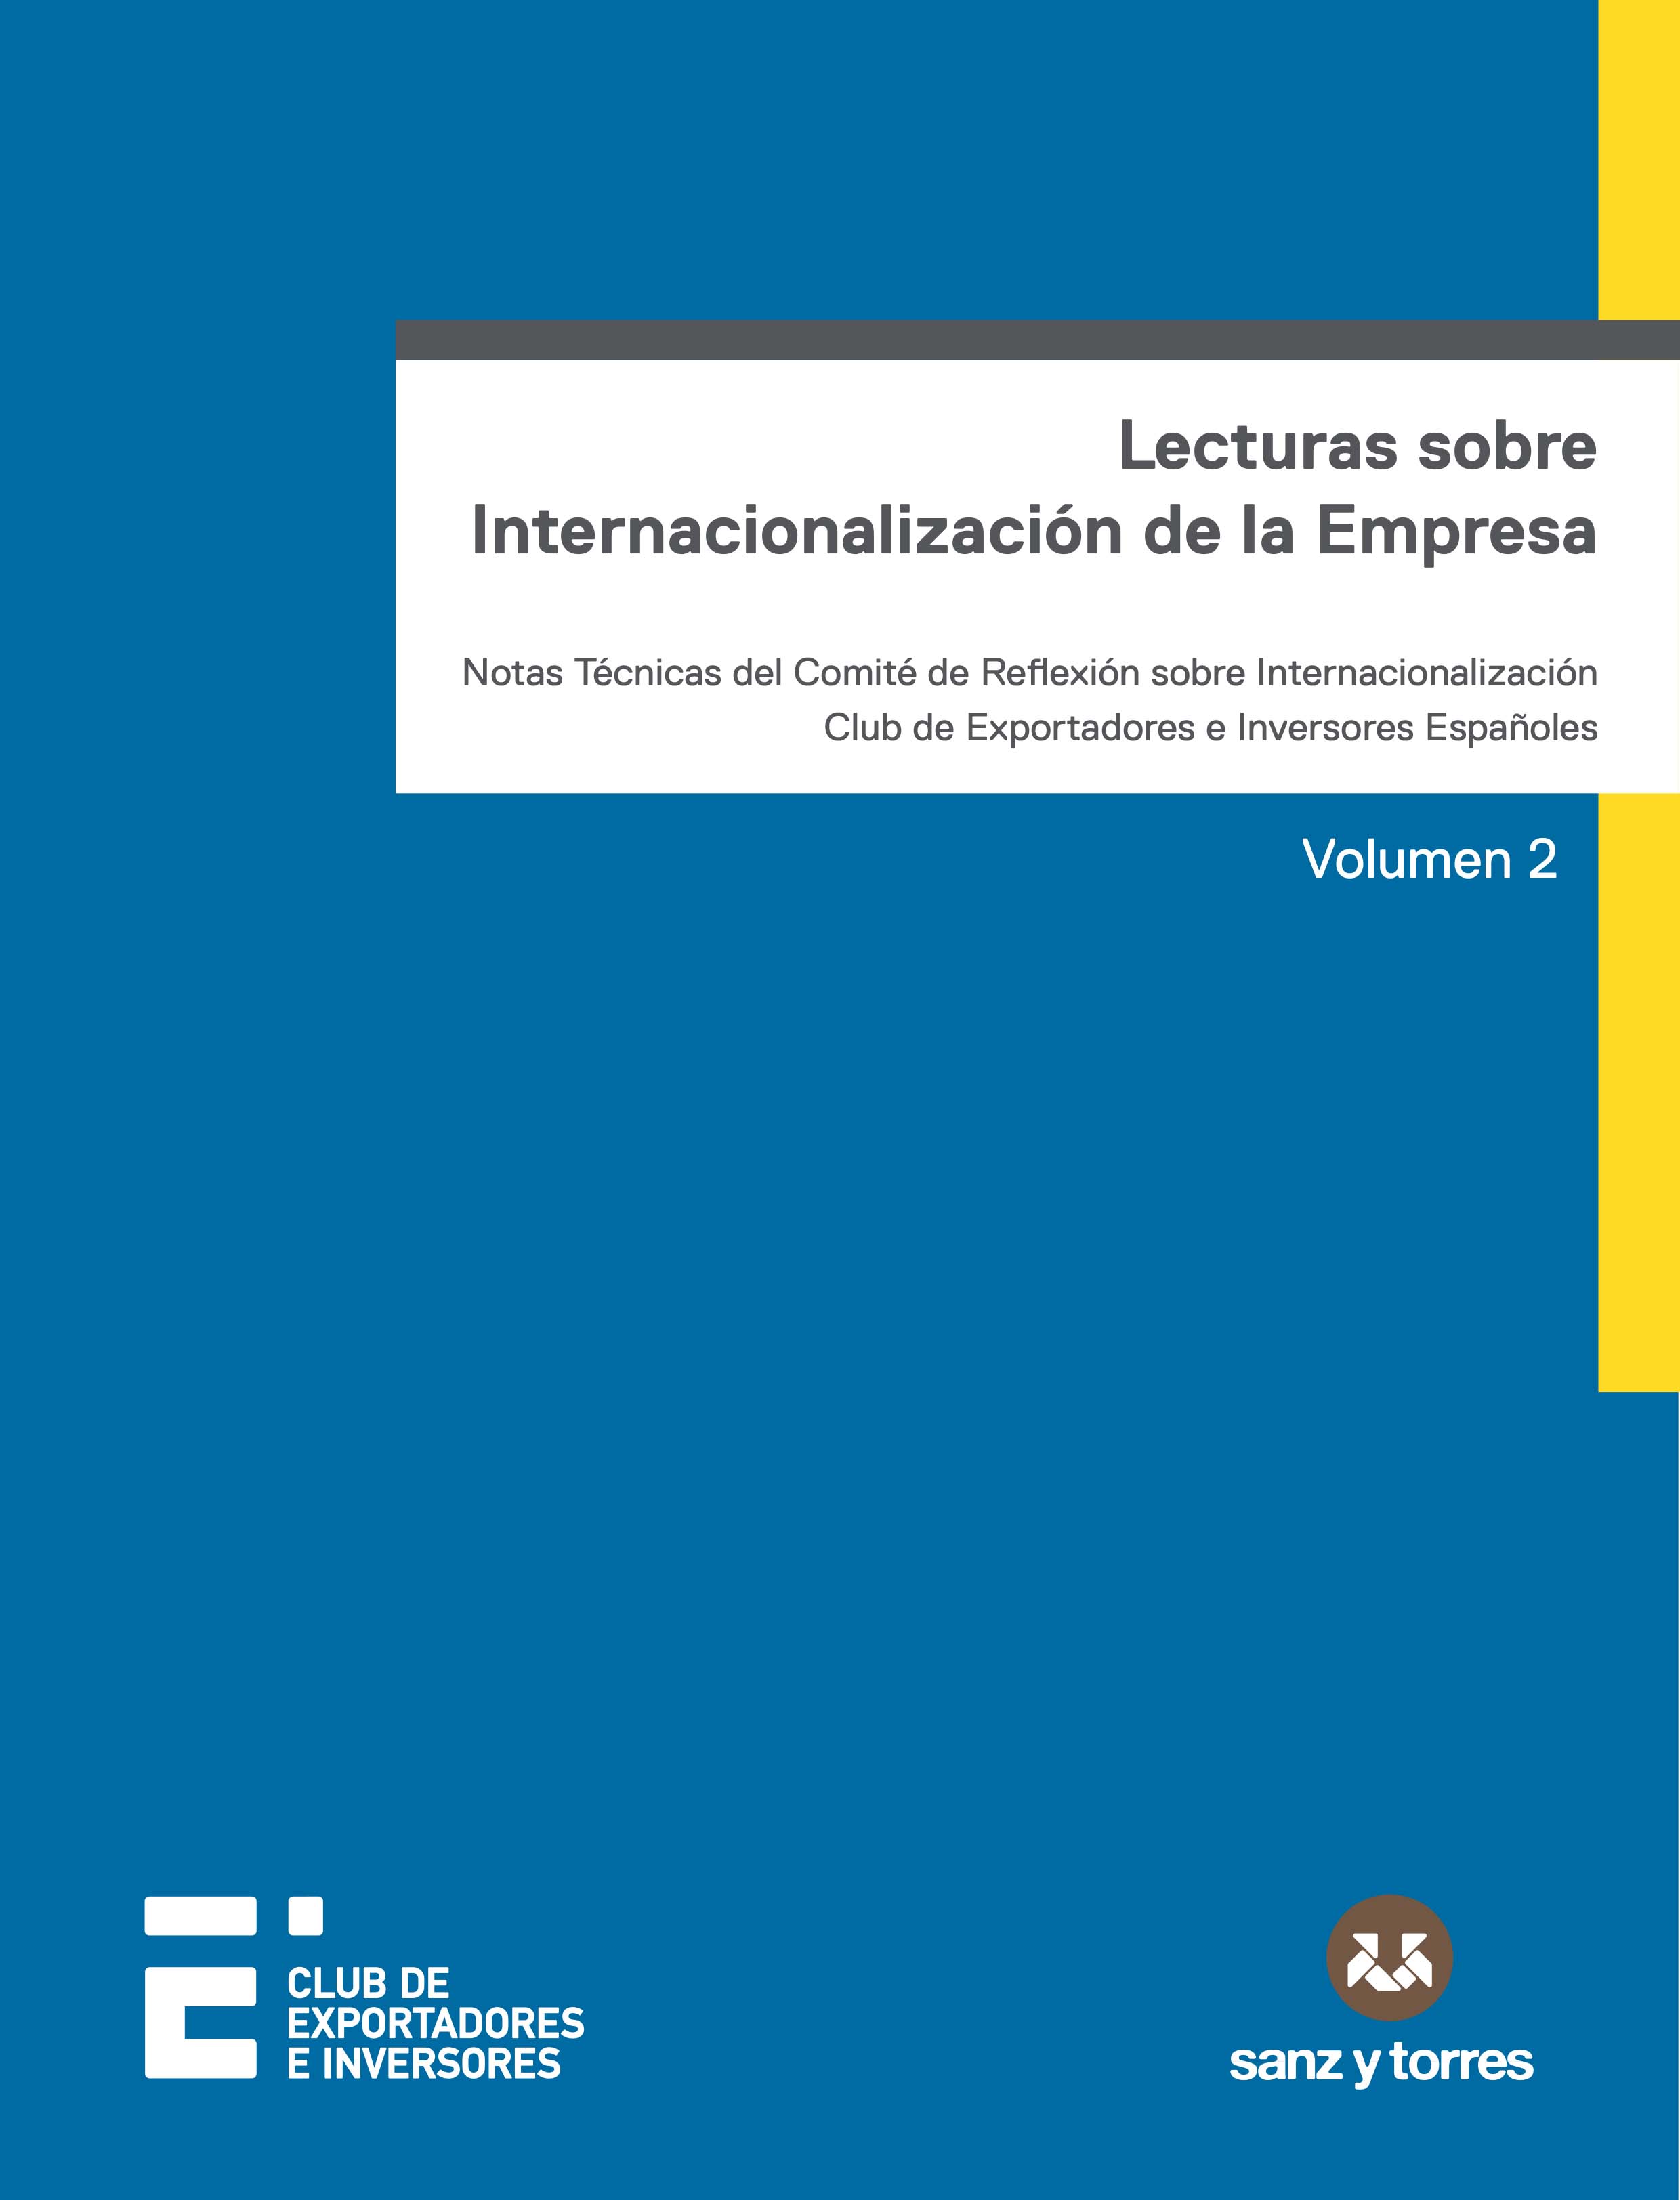 Lecturas sobre internacionalización de la empresa 2